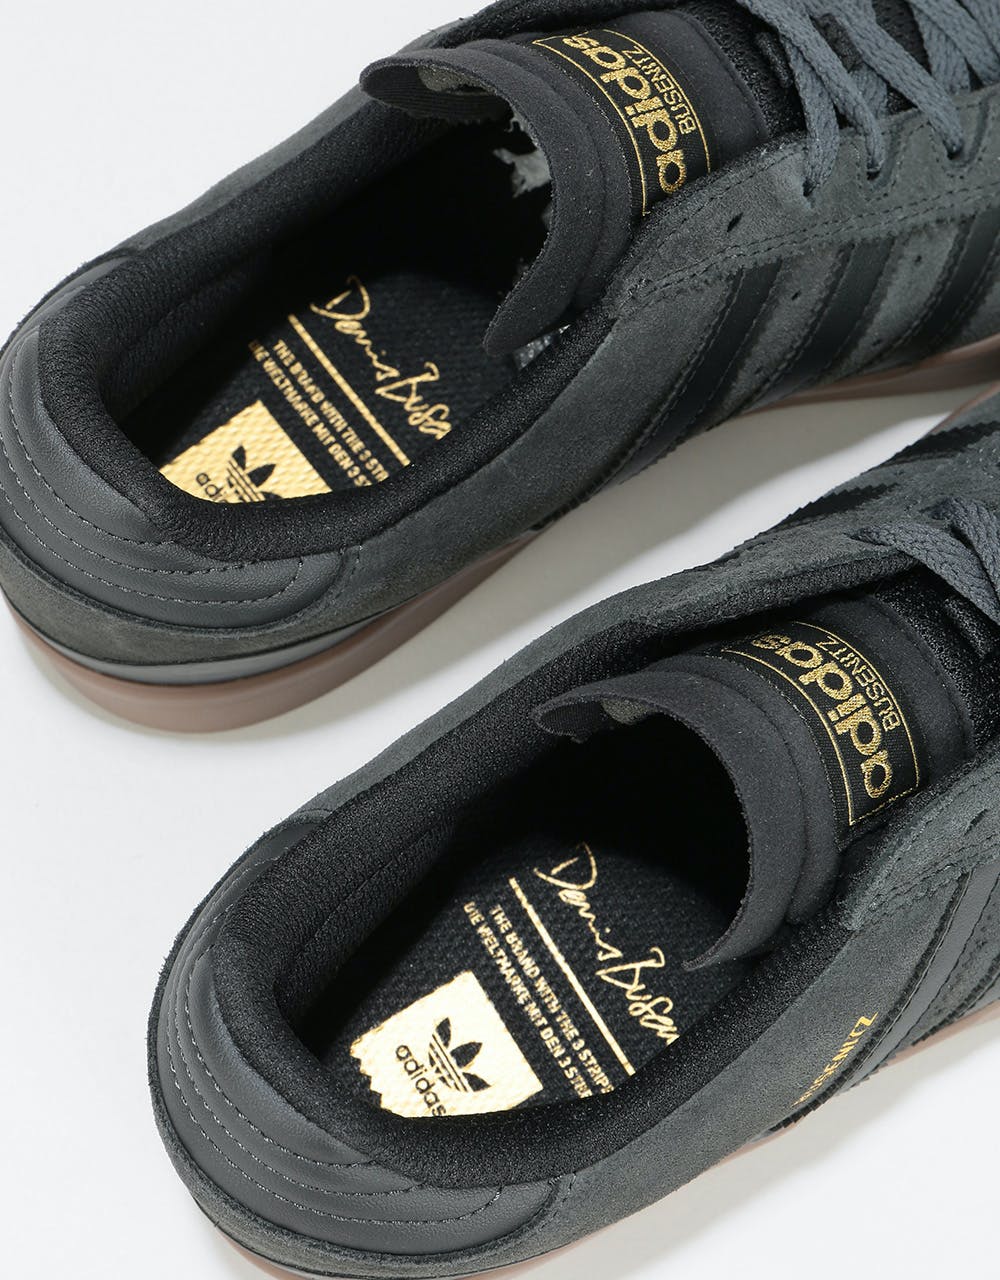 Adidas Busenitz Vulc Skate Shoes - Solid Grey/Core Black/Gum